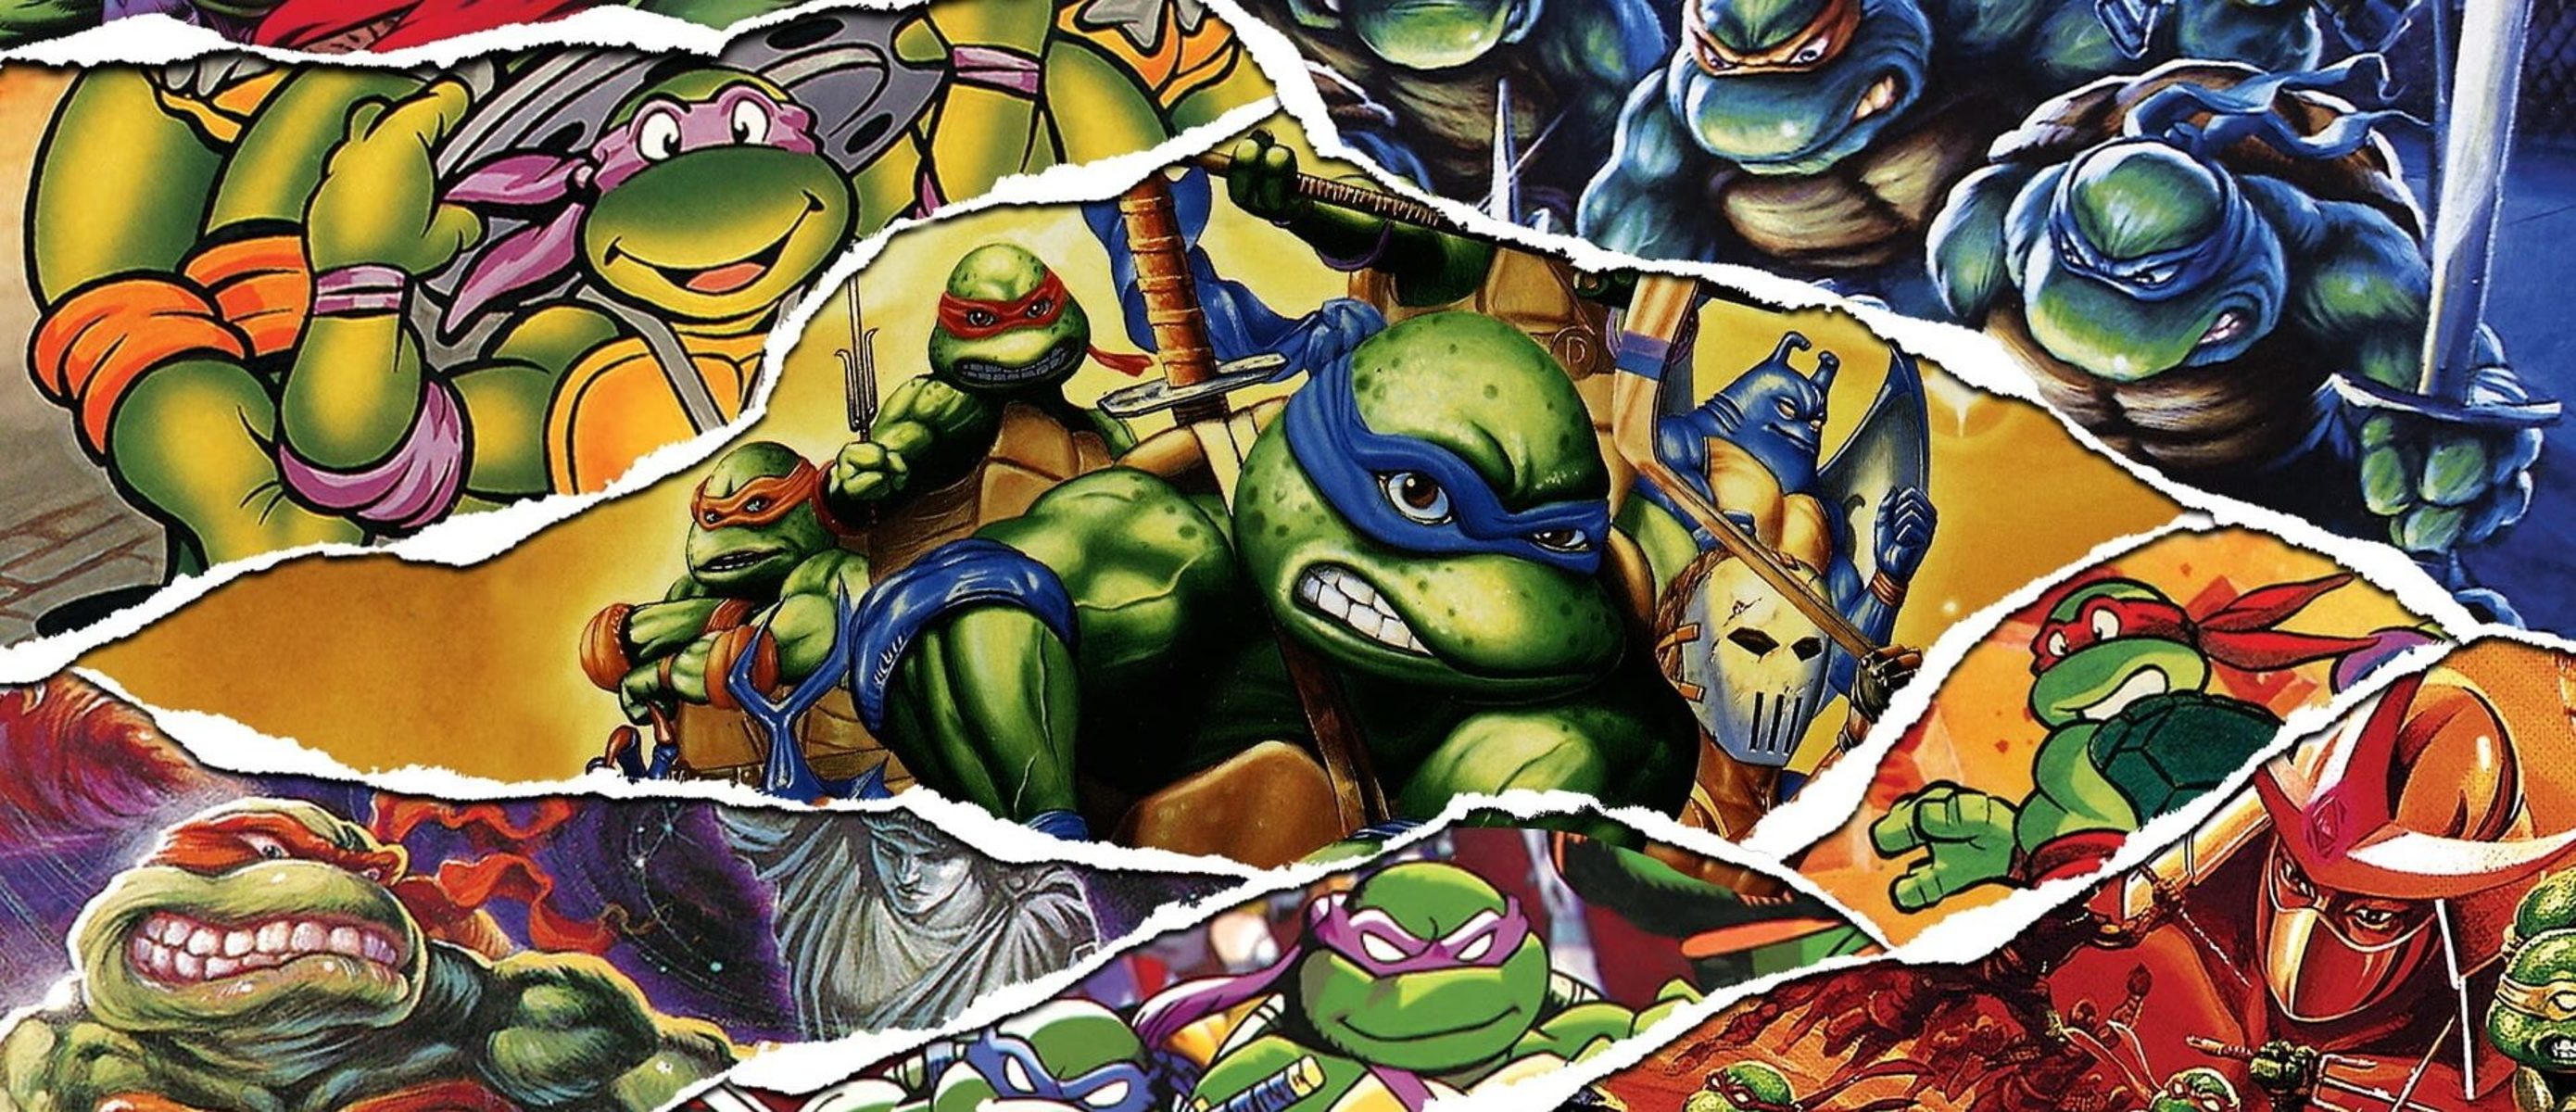 Turtles cowabunga. Teenage Mutant Ninja Turtles: the Cowabunga. TMNT Cowabunga collection. Teenage Mutant Ninja Turtles: the Cowabunga collection. Пятая черепашка ниндзя.